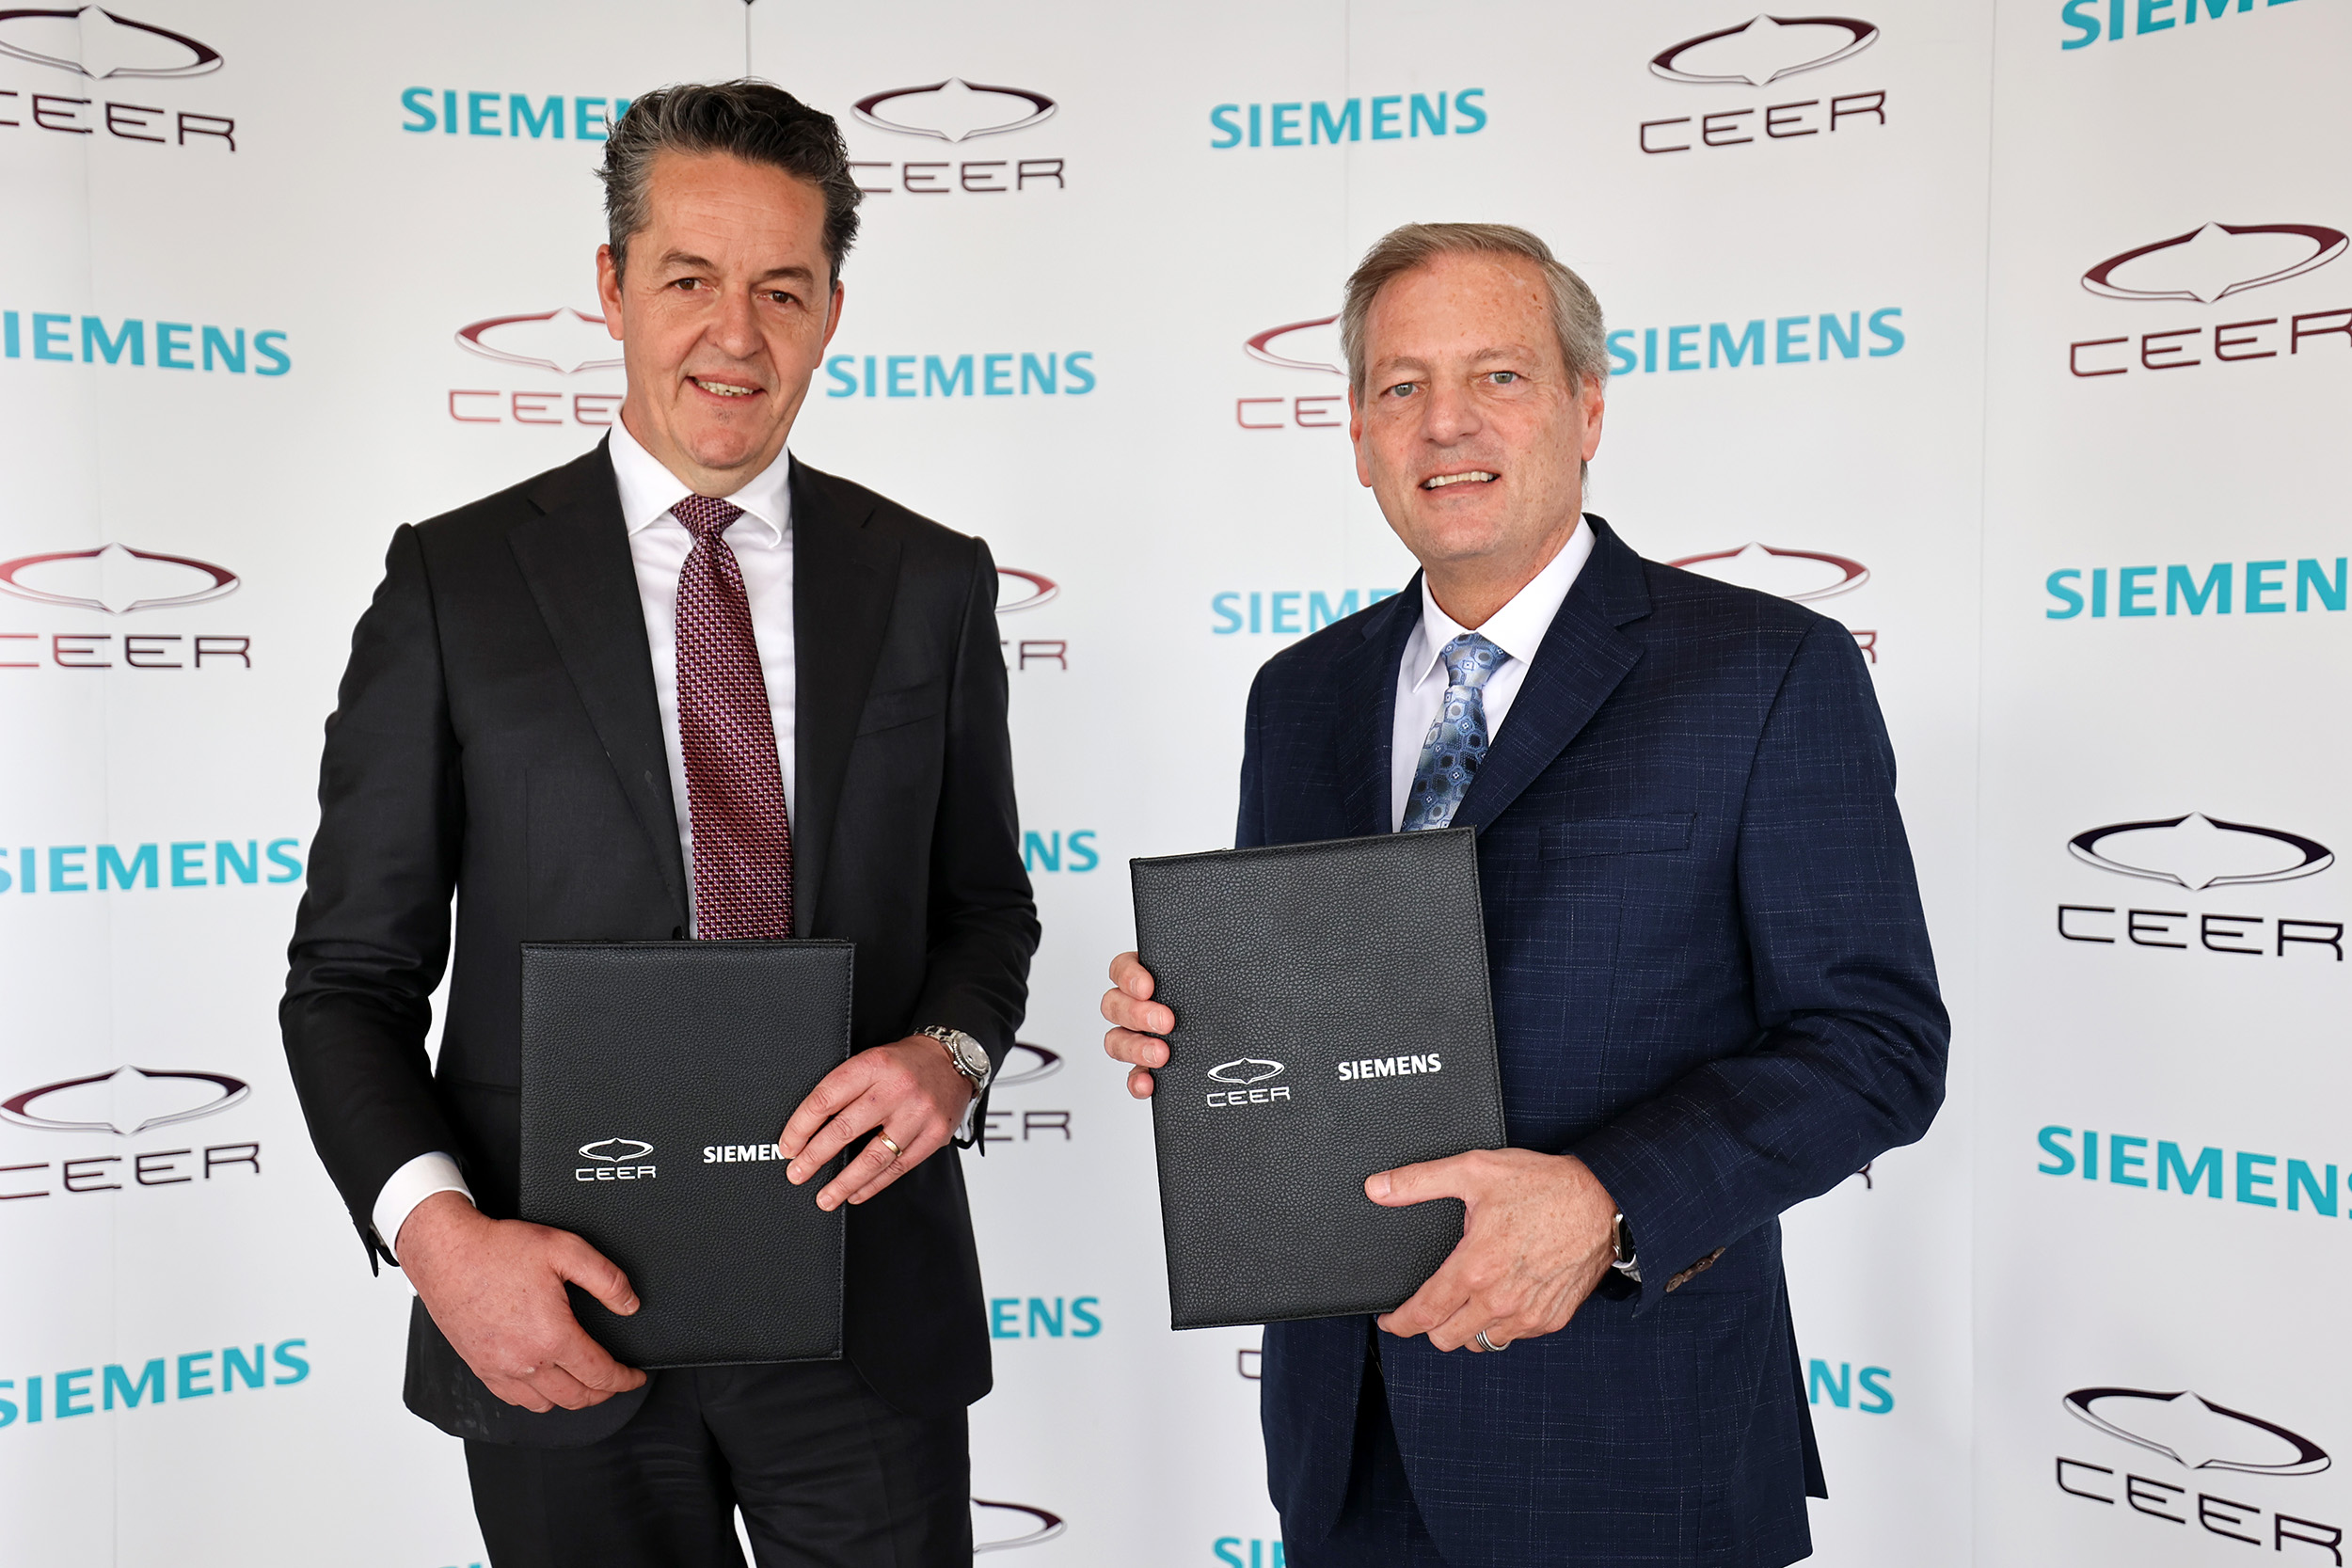 Ceer Siemens